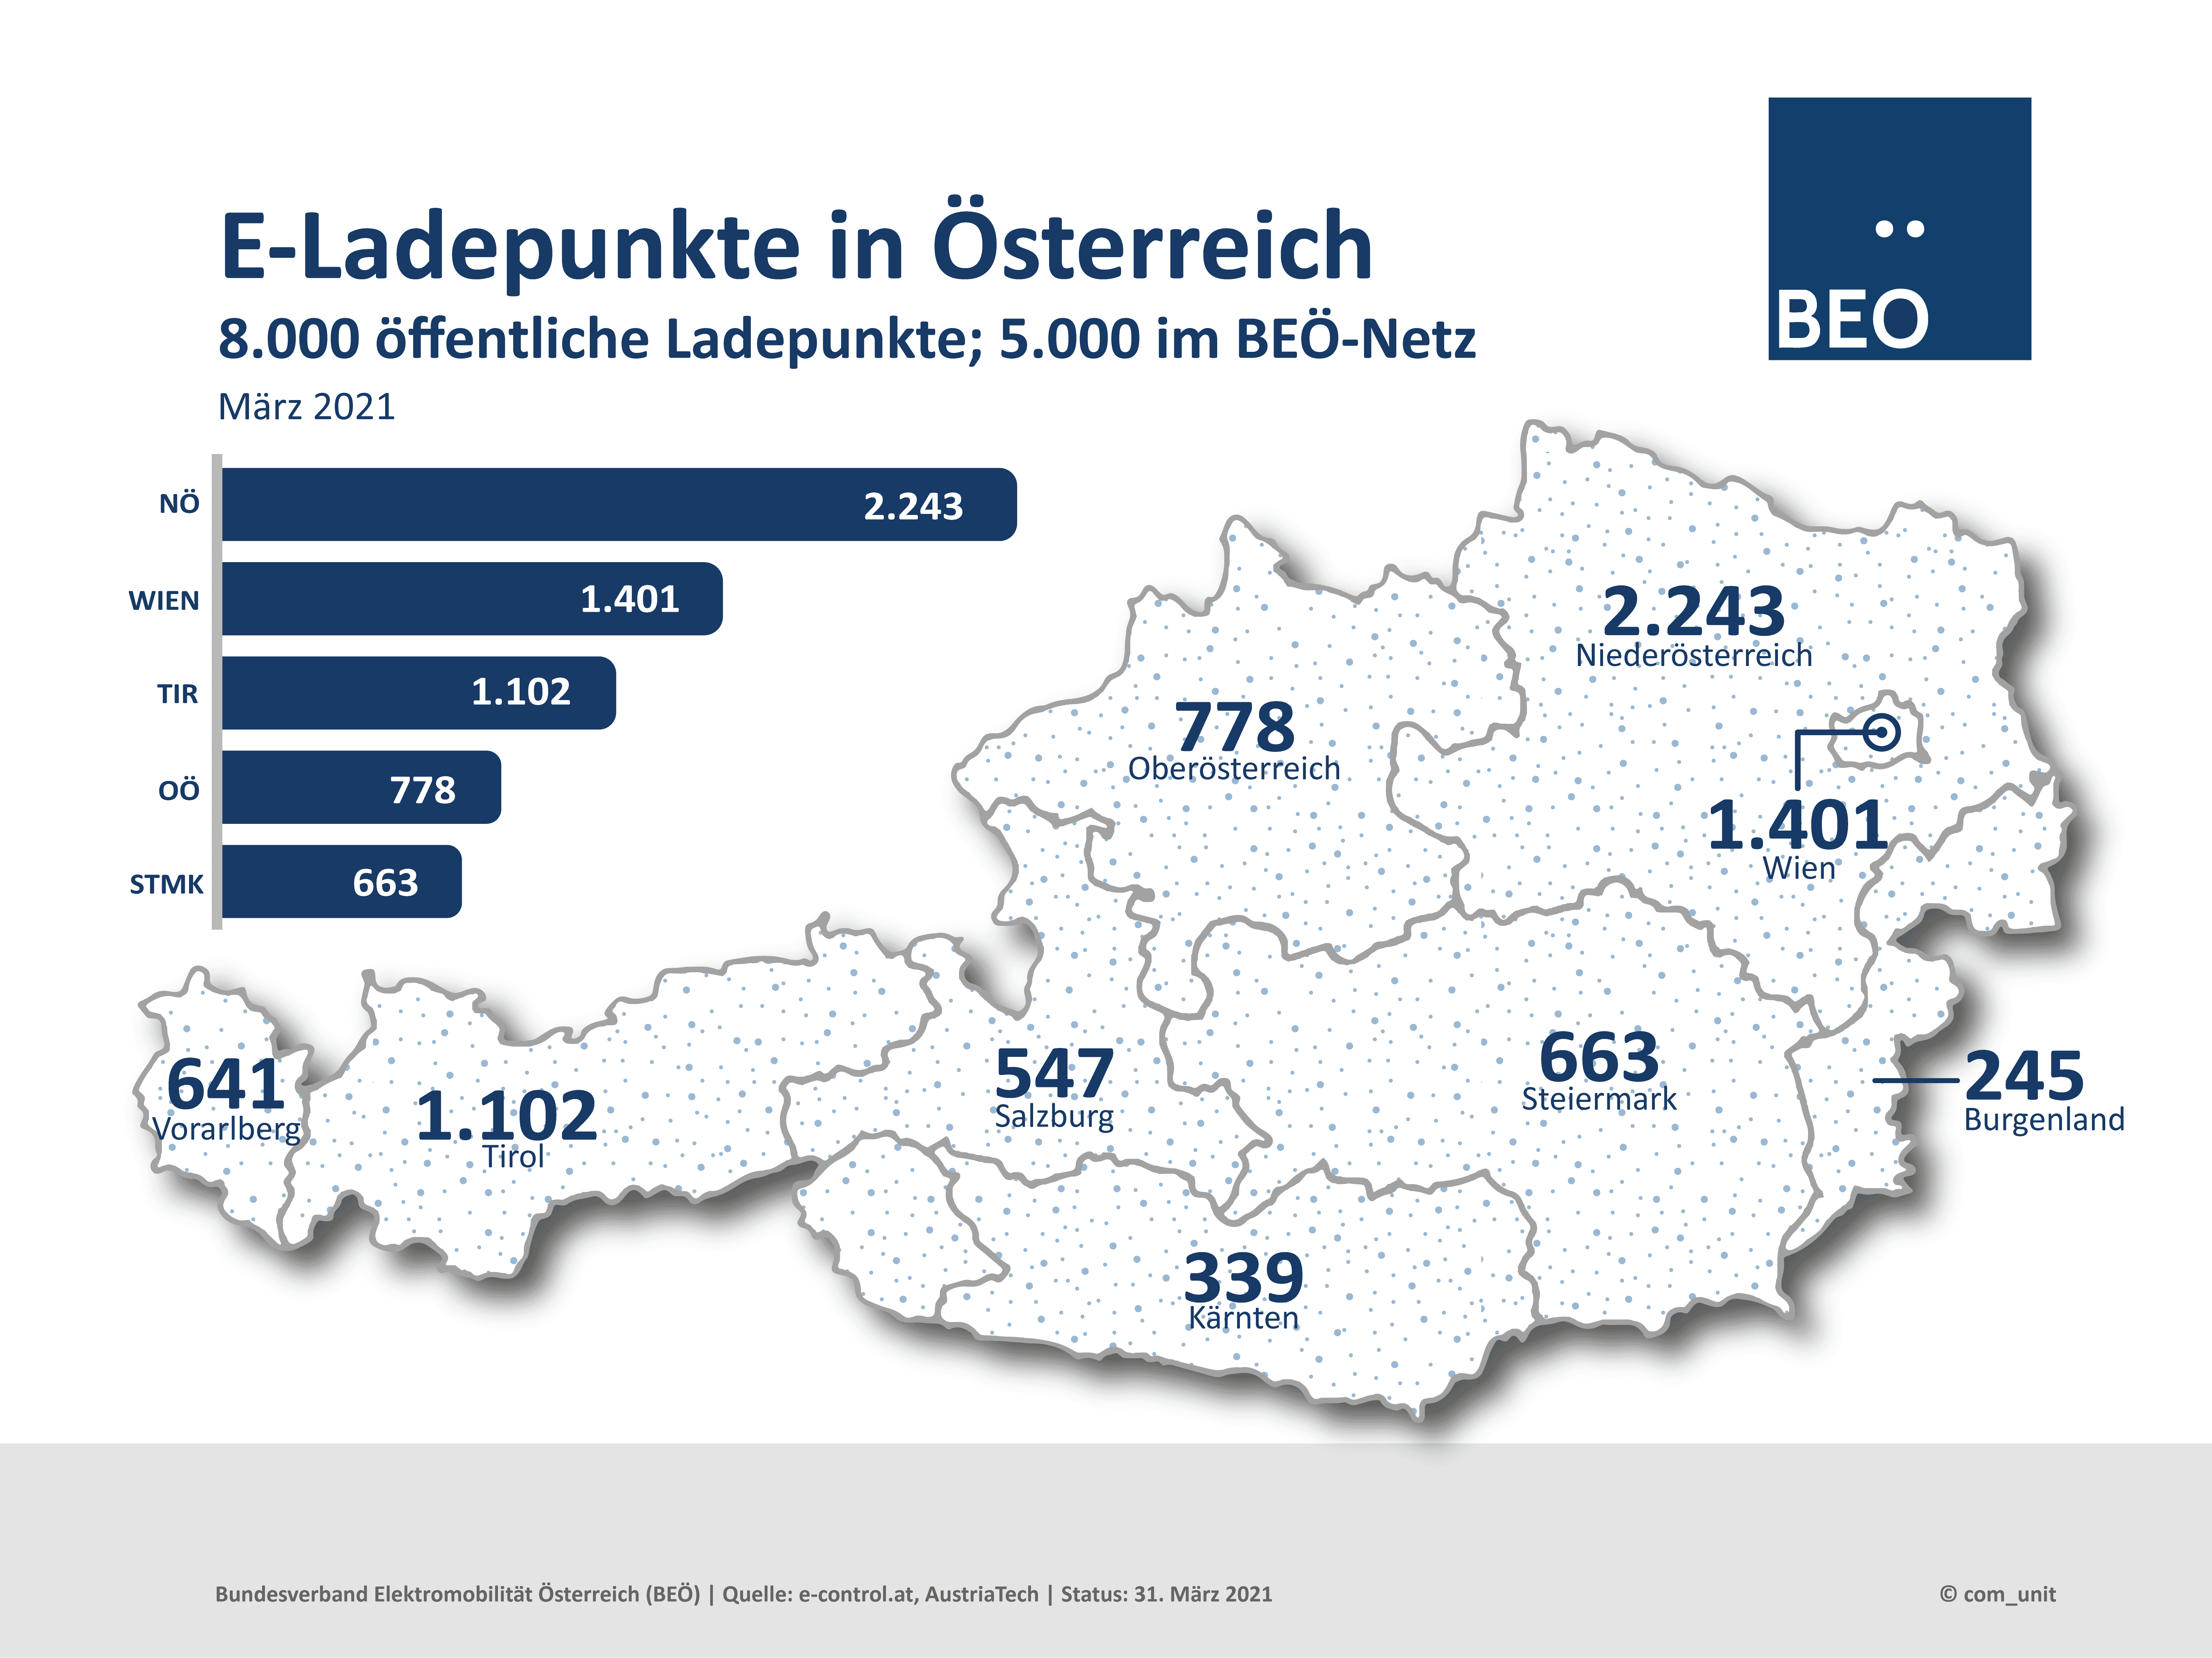 In Österreich gibt es rund 8.000 öffentlich zugängliche Ladepunkte (Quelle: e-control, Stand März 2021). Dank E-Roaming können bis zu 5.000 öffentlichen Ladepunkte im BEÖ-Netz genutzt werden. Niederösterreich weist aktuell mit 28% die meisten E-Ladepunkte auf.